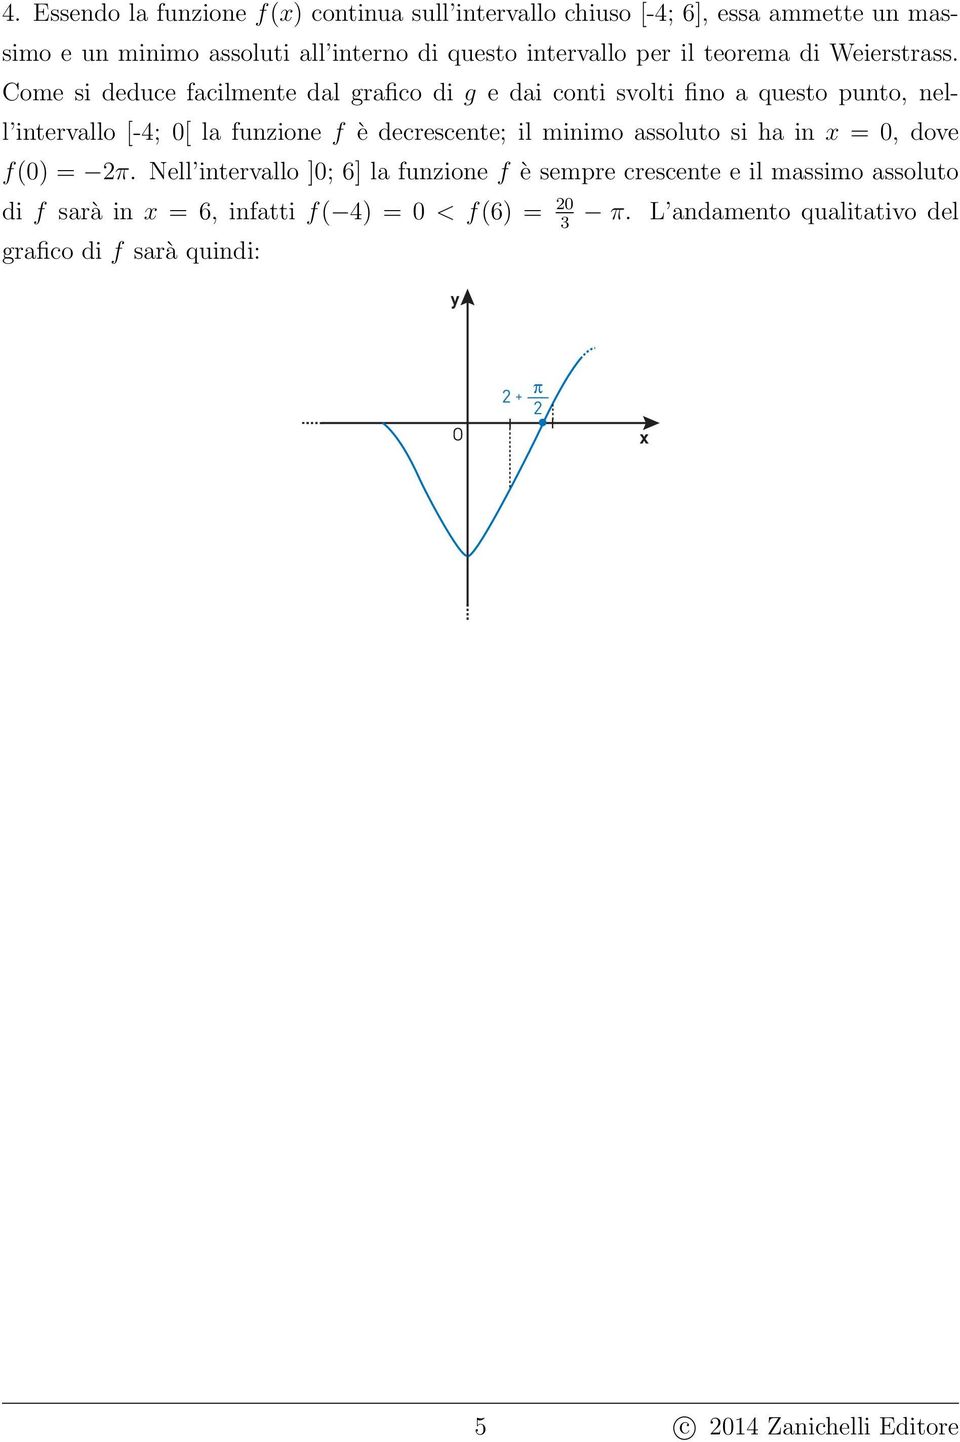 Come si deduce facilmente dal grafico di g e dai conti svolti fino a questo punto, nell intervallo [-; 0[ la funzione f è decrescente; il